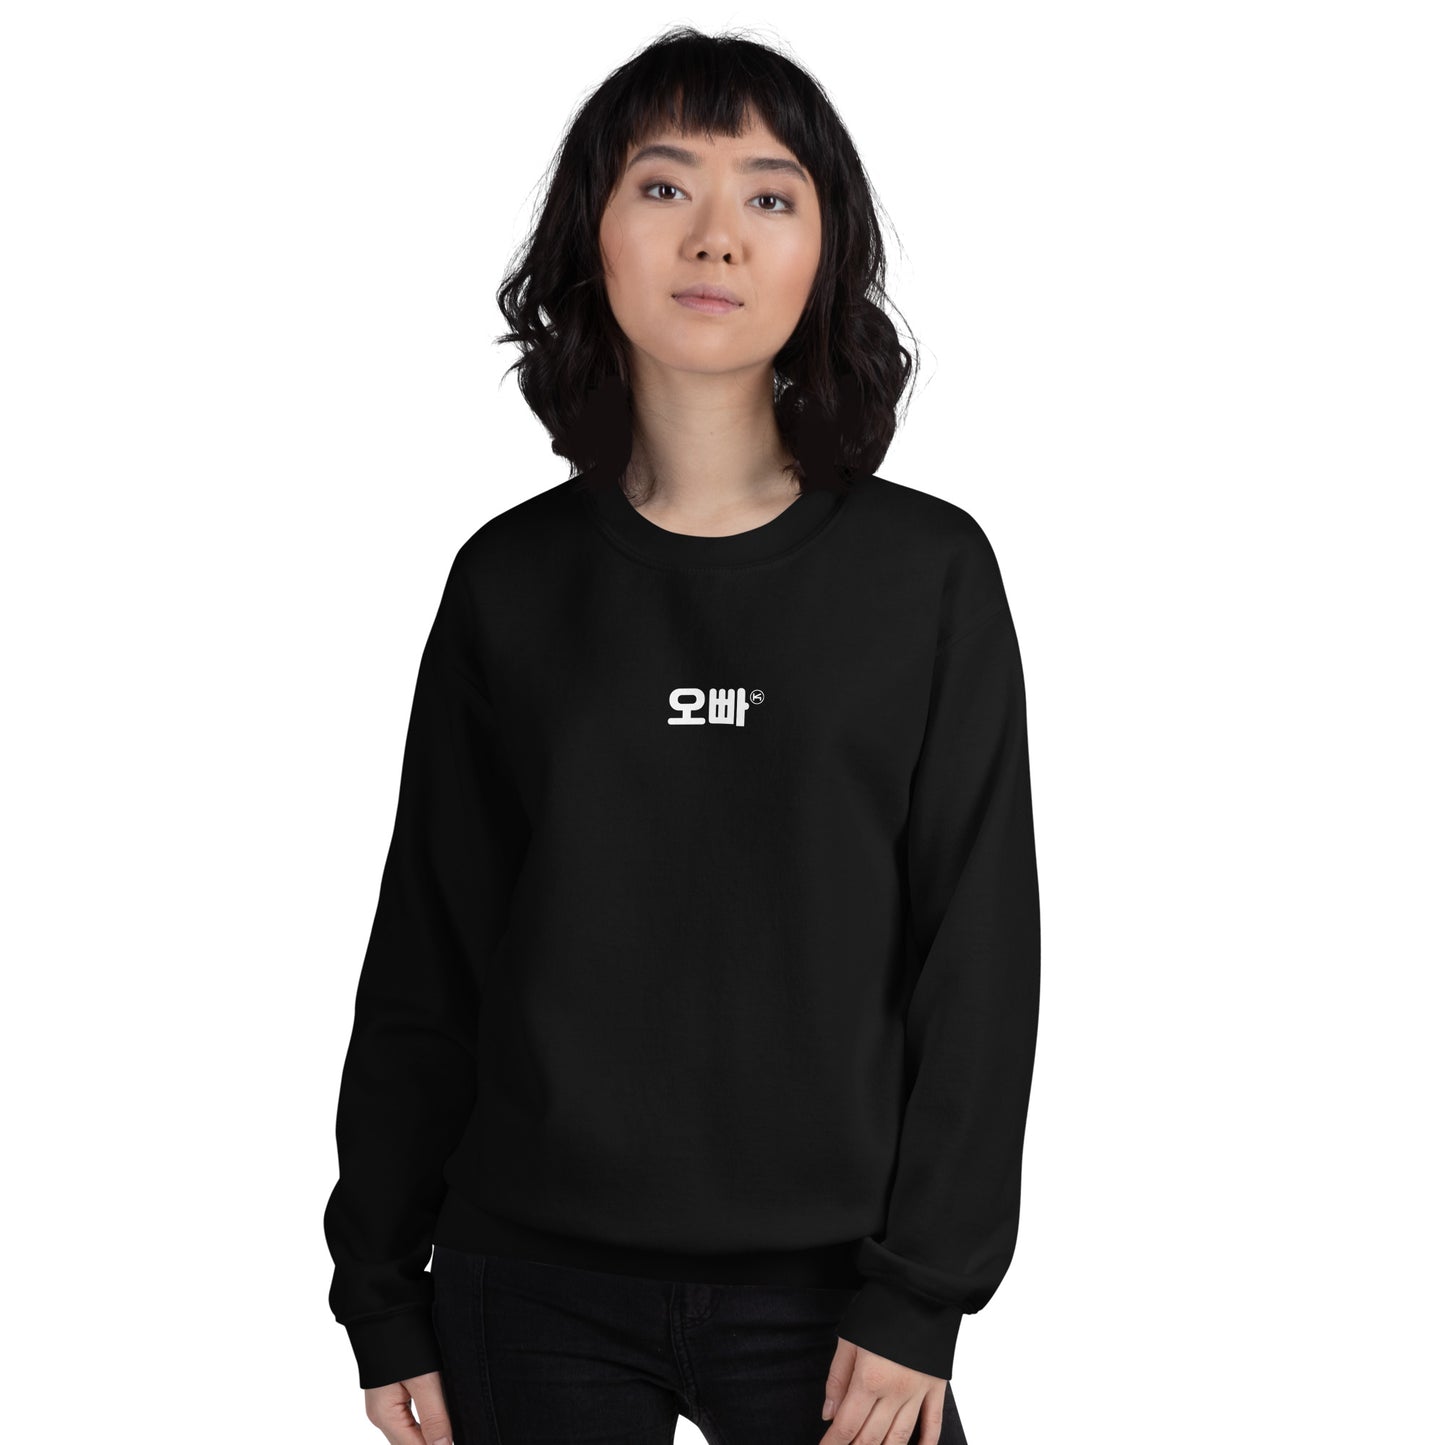 Brother in Korean Hangul Kpop Merch Unisex Sweatshirt